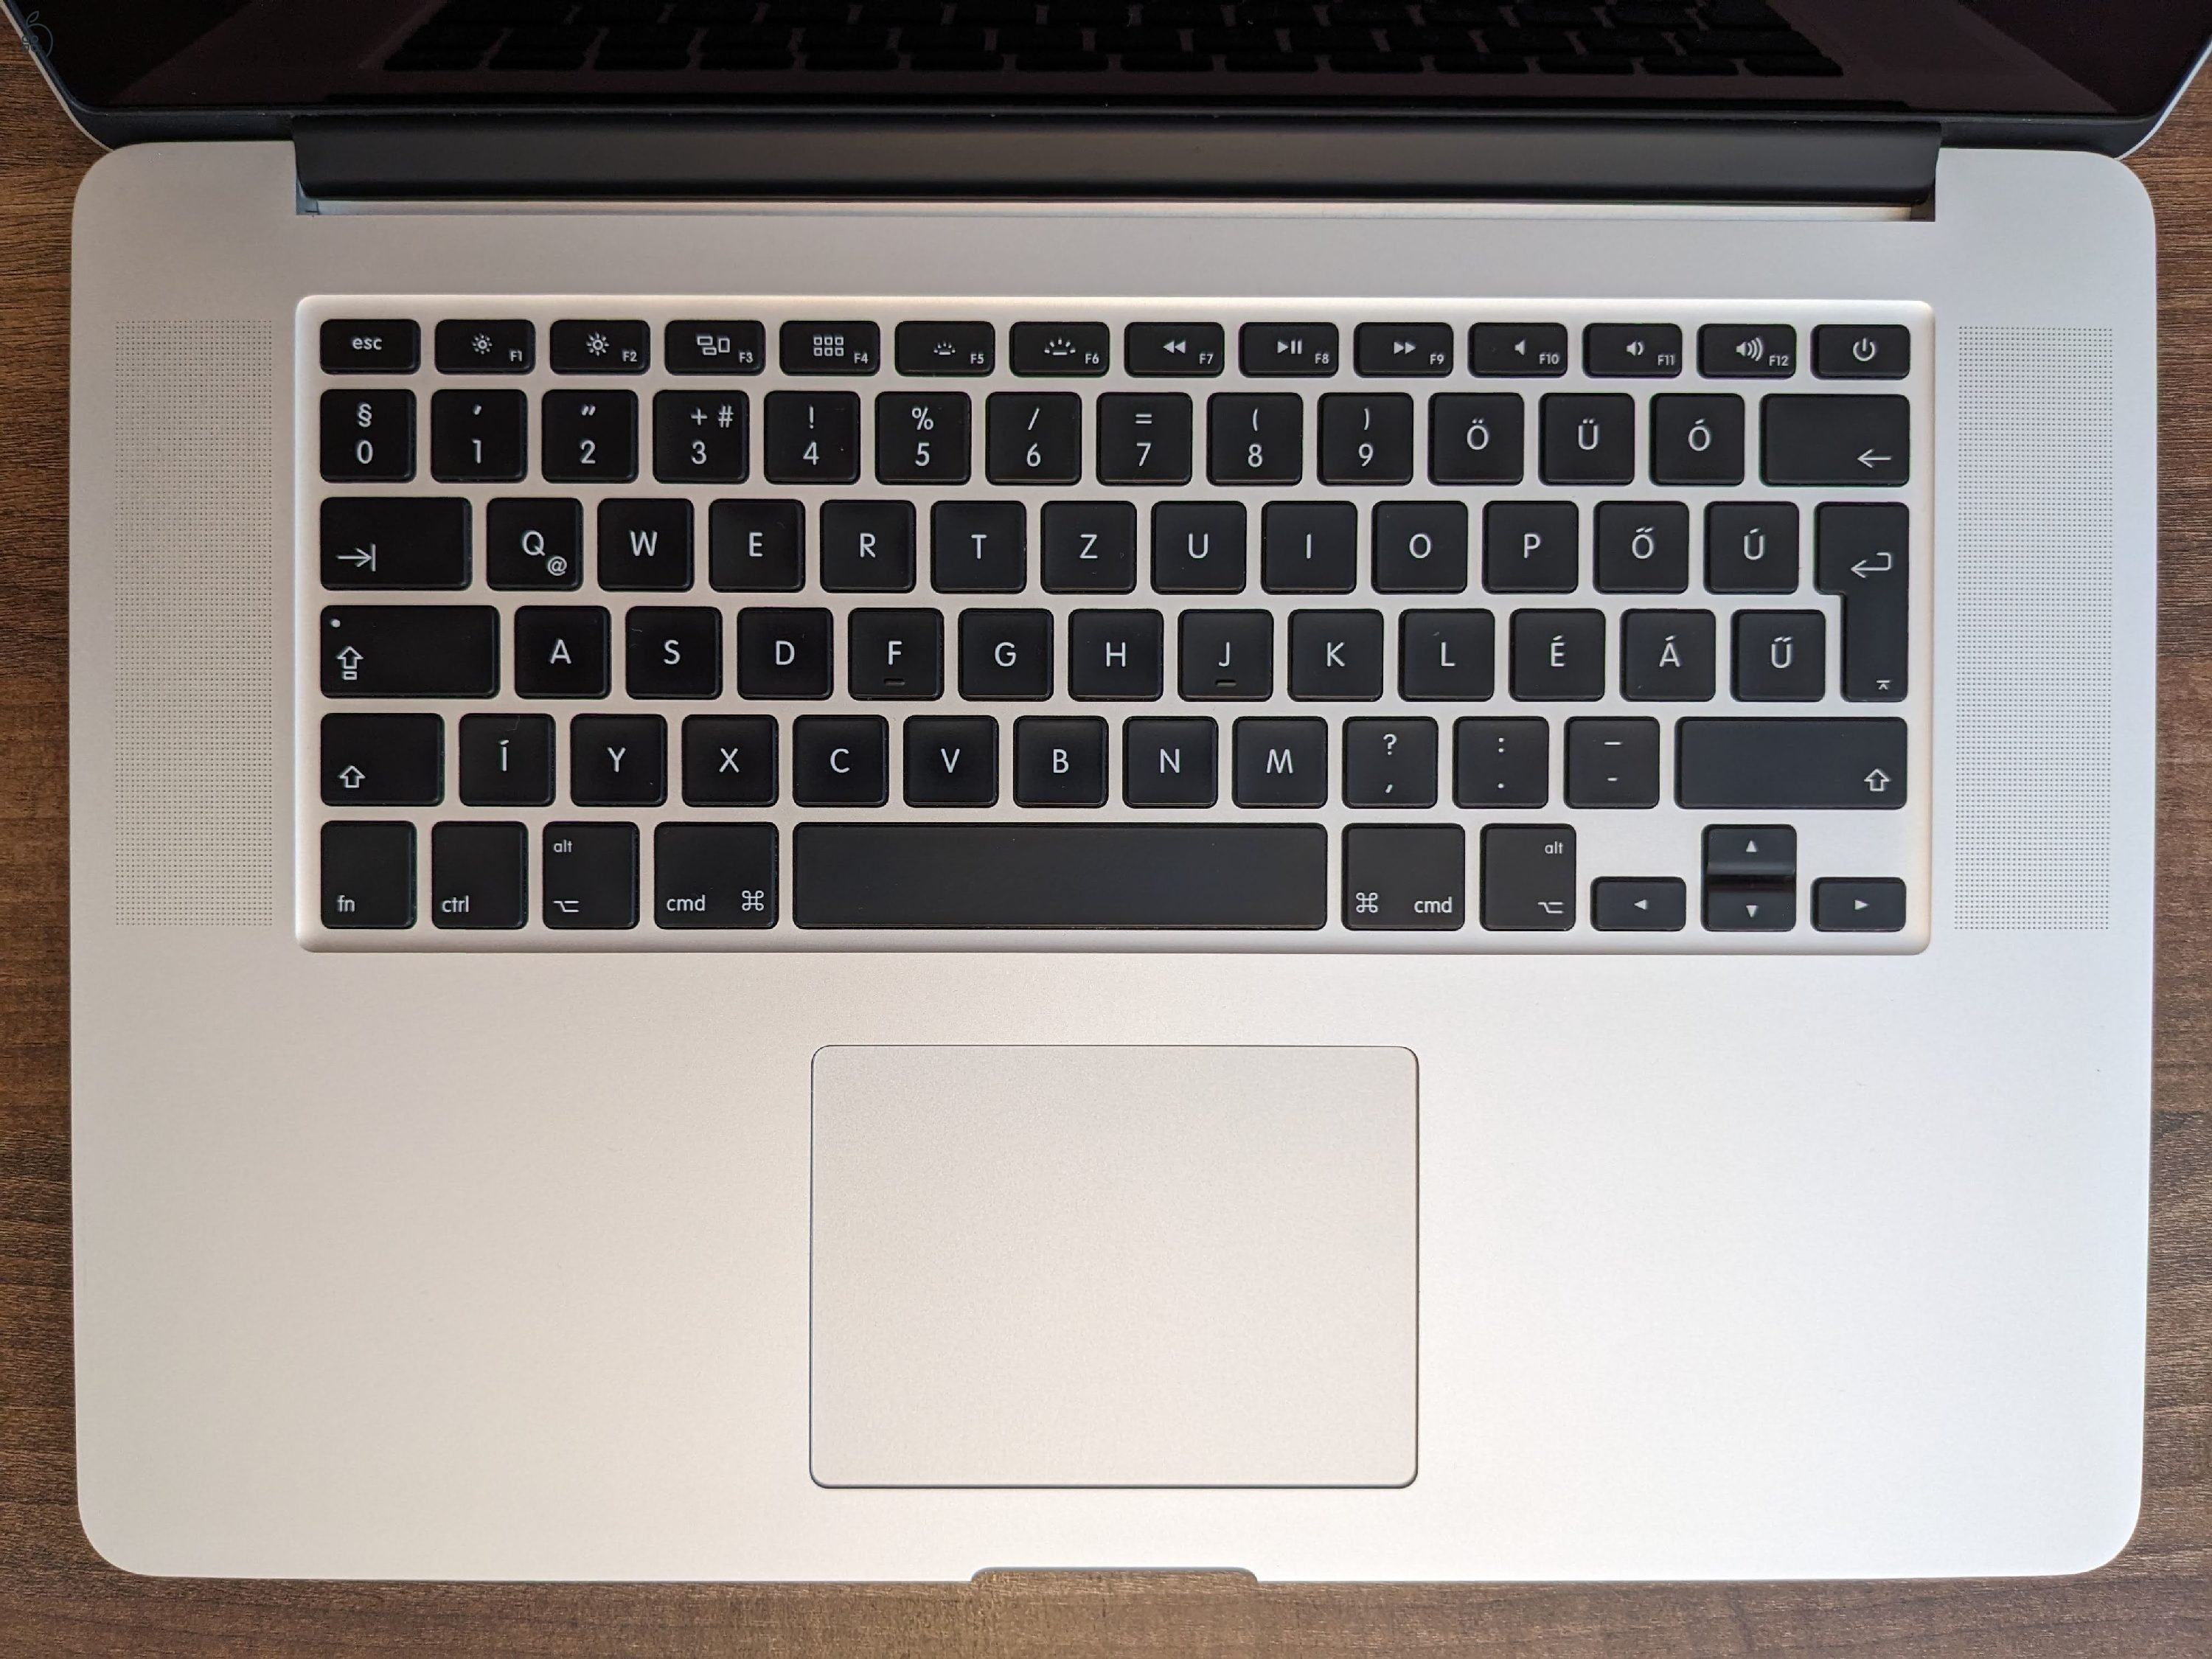 MacBook Pro (Retina, 15-inch, Mid 2015) 16GB RAM, 256GB SSD